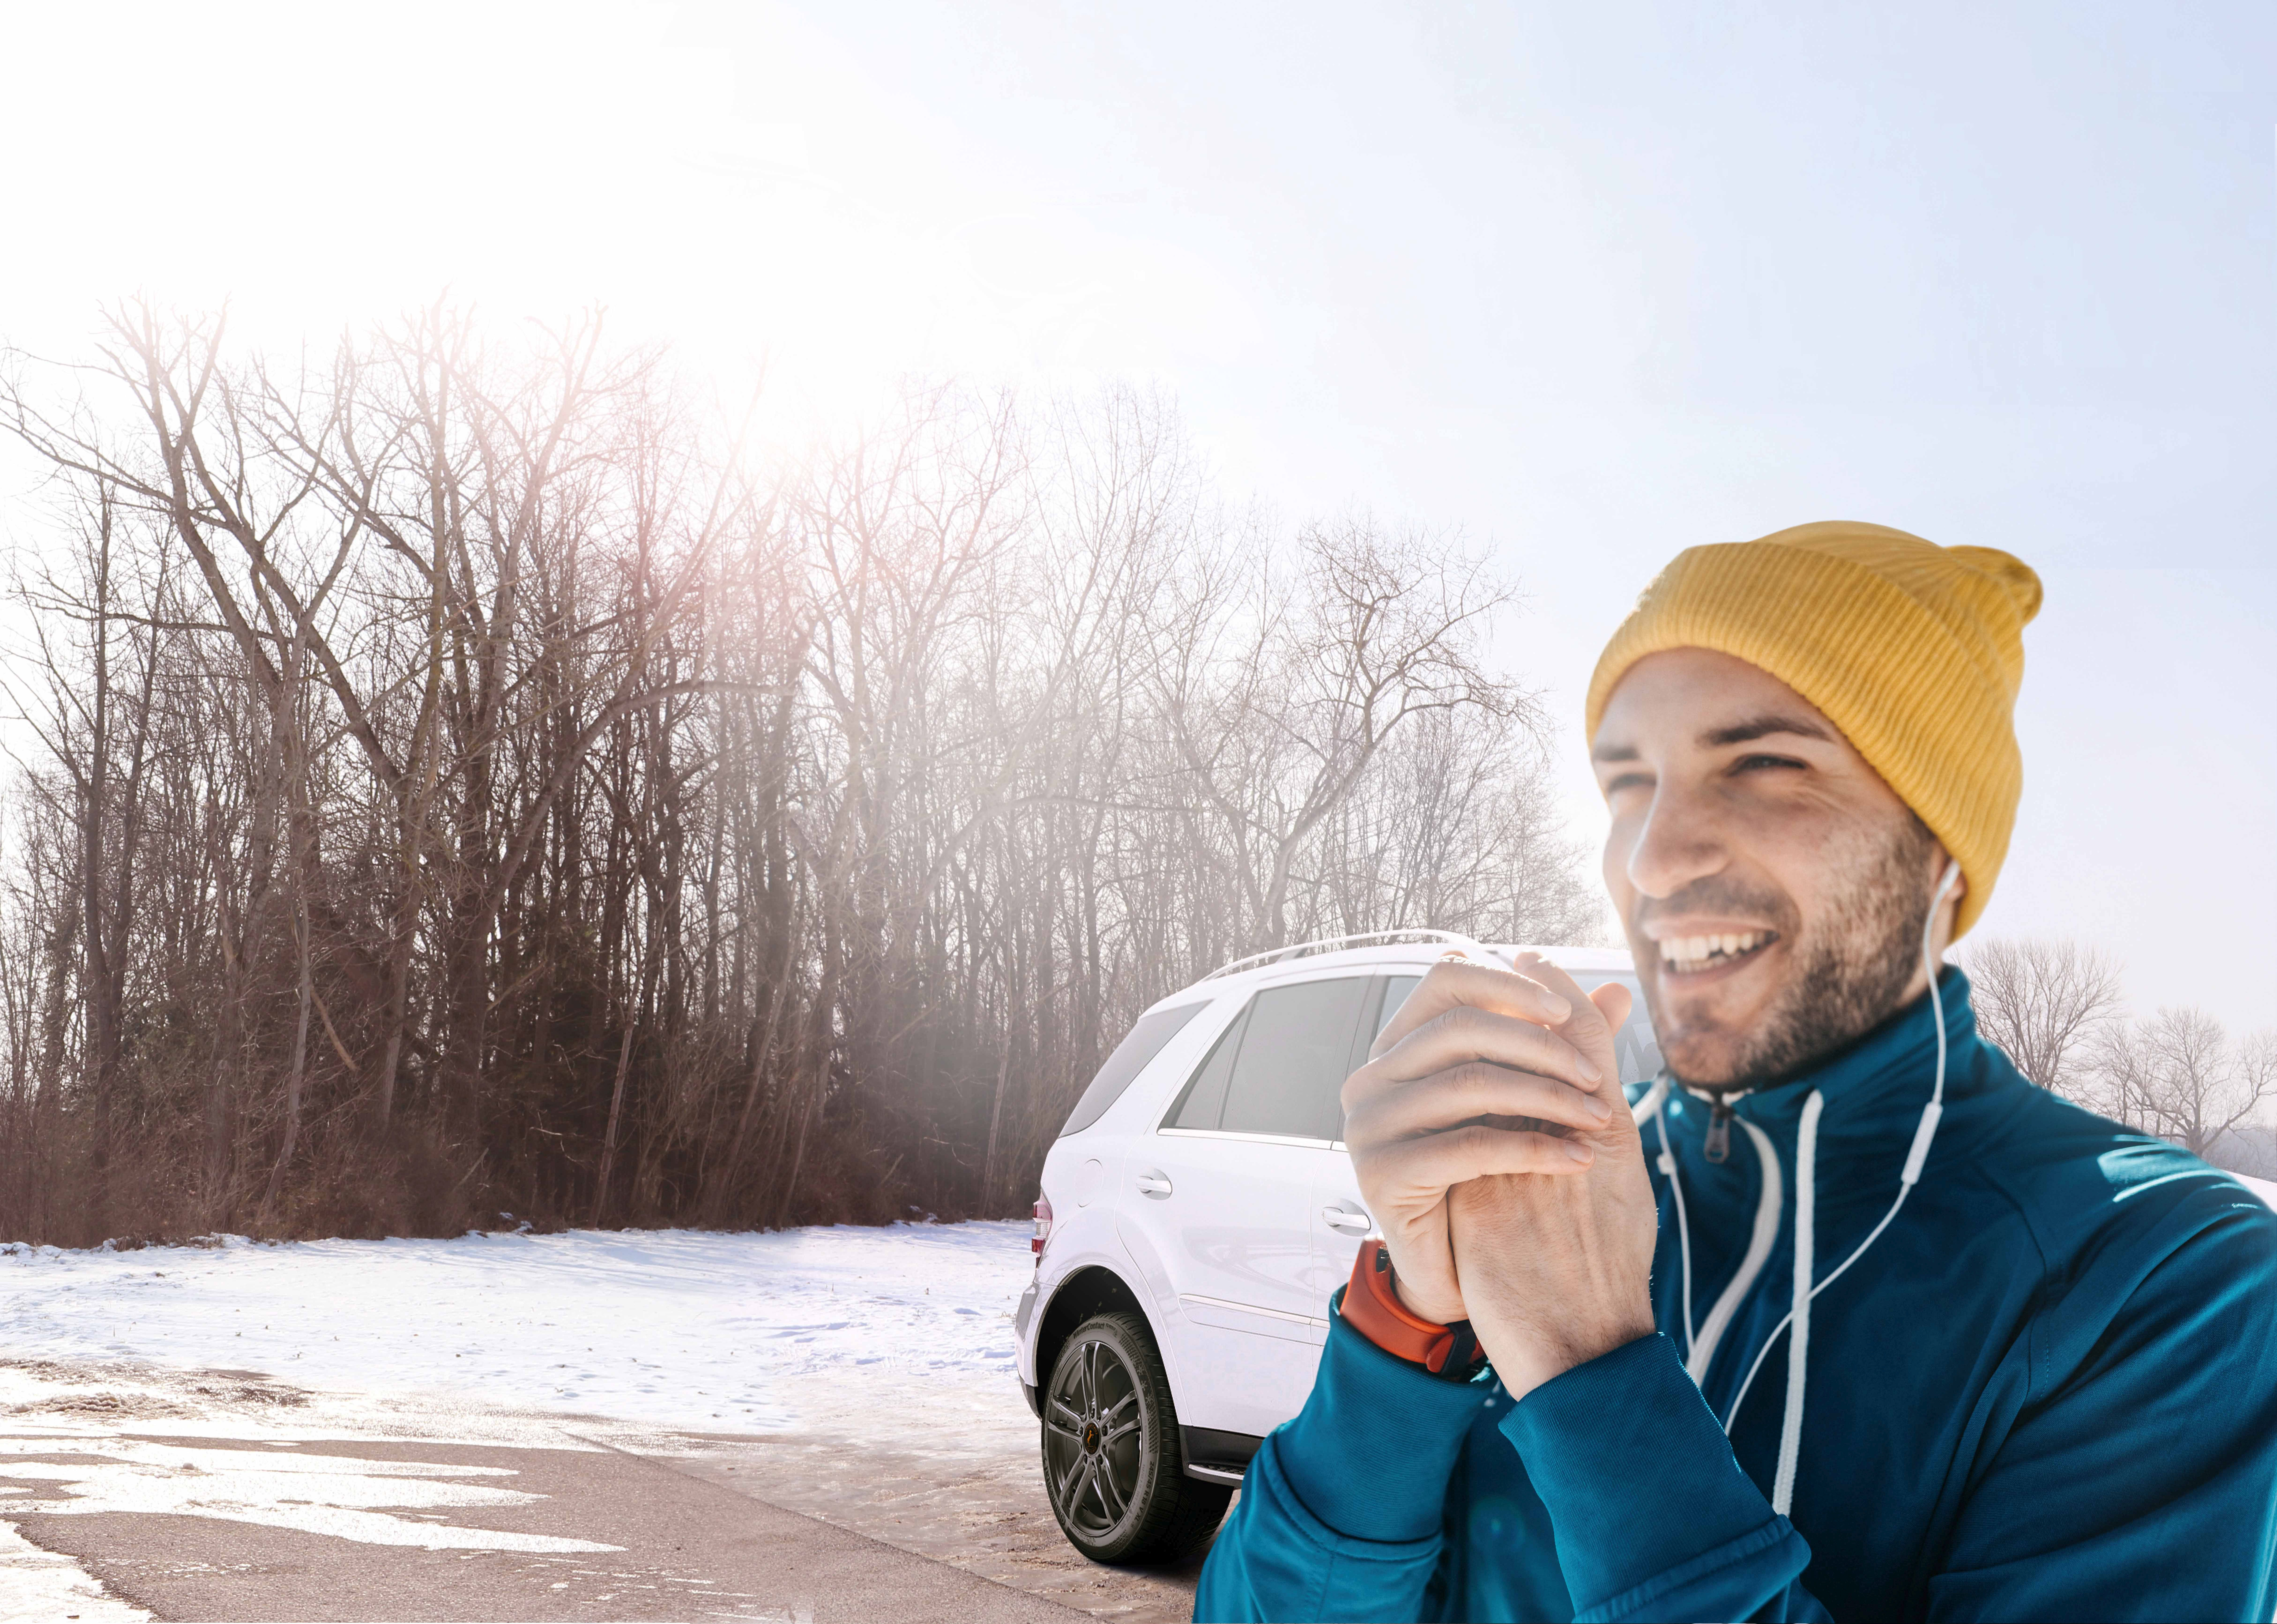 Mann reibt sich die Hände vor Kälte. Im Hintergrund ist Schneelandschaft und ein Fahrzeug zu sehen.